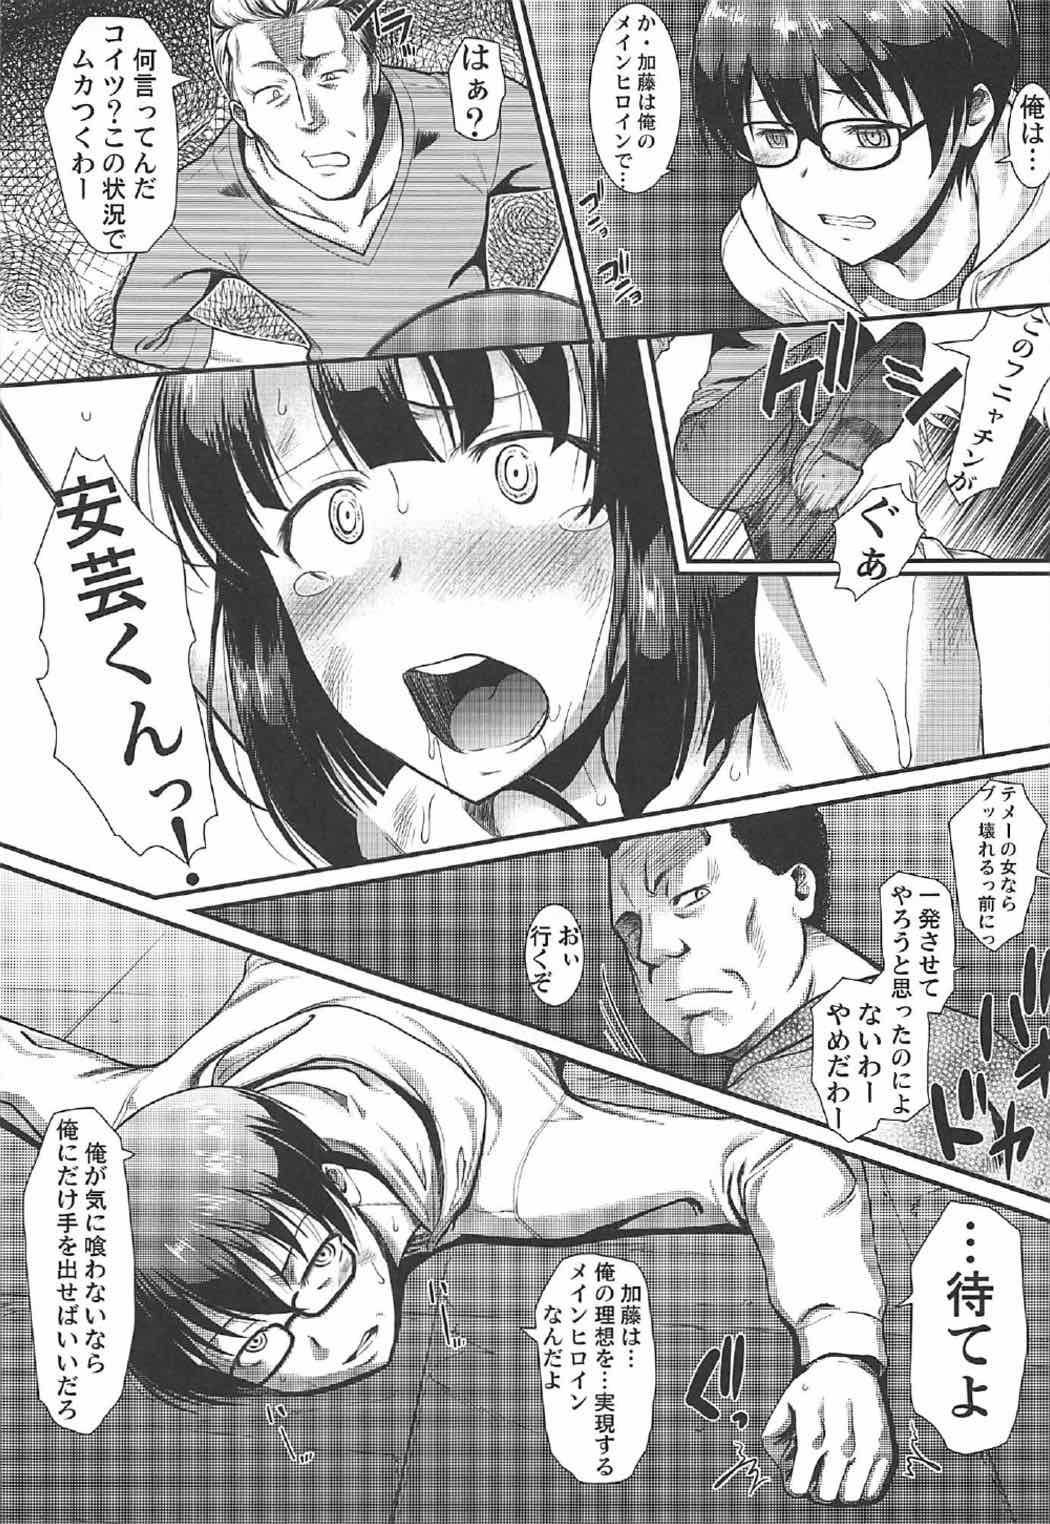 Pene Kimi wa Boku no Taiyou da 2 - Saenai heroine no sodatekata Toilet - Page 8